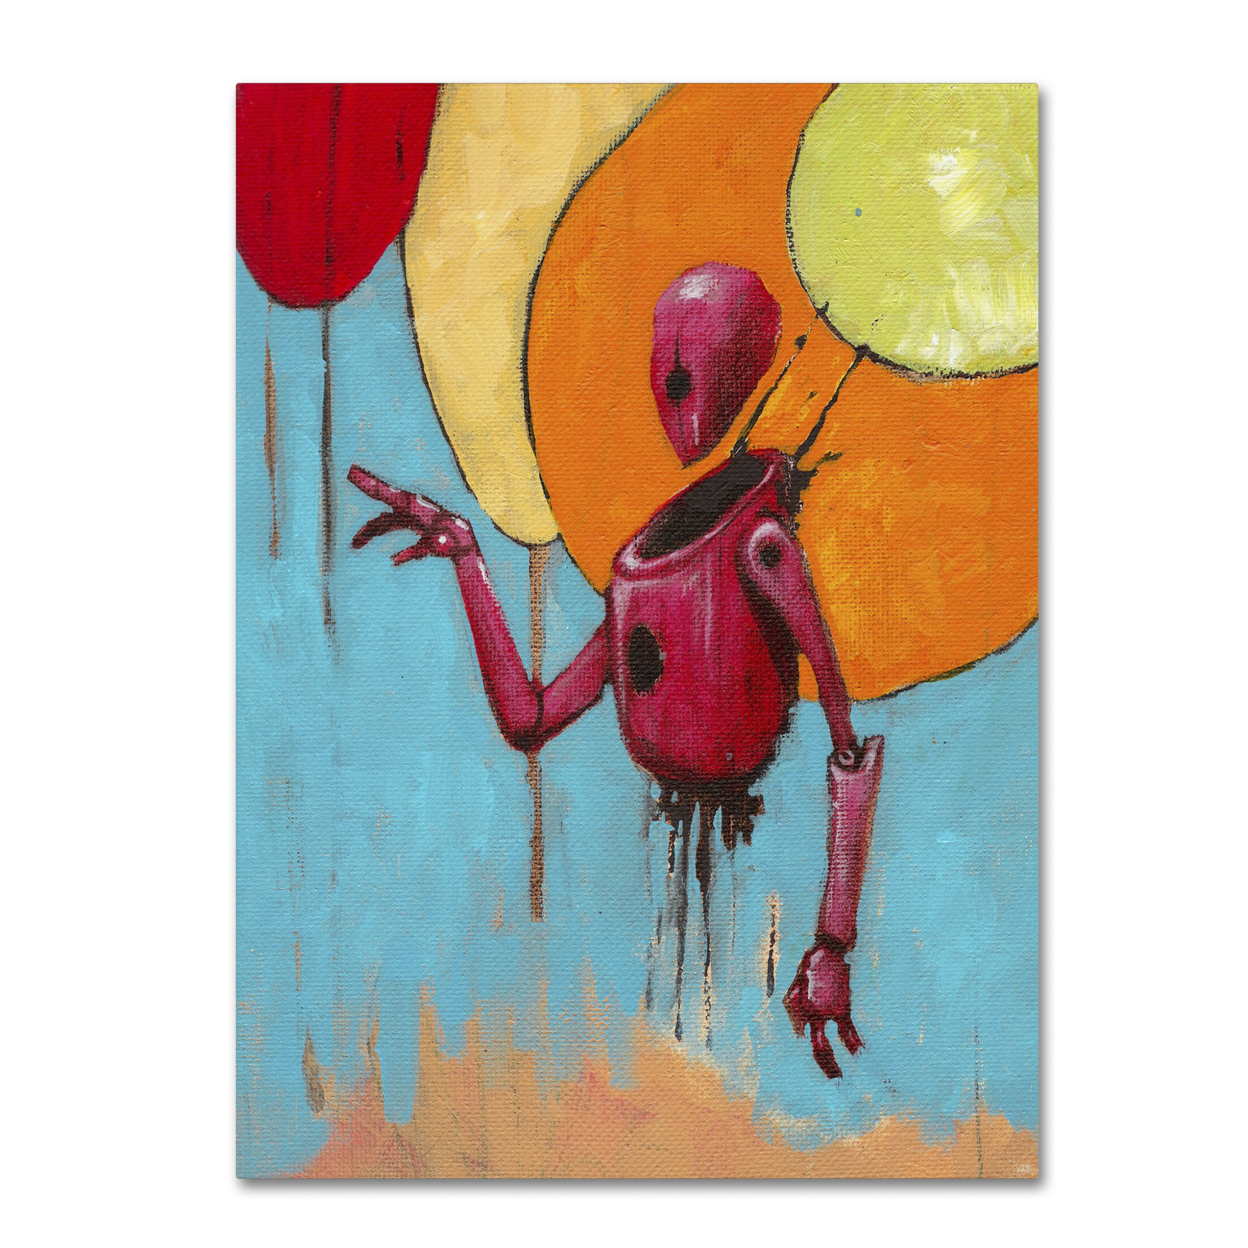 Craig Snodgrass 'Red Junk Robot' Canvas Wall Art 35 X 47 Inches